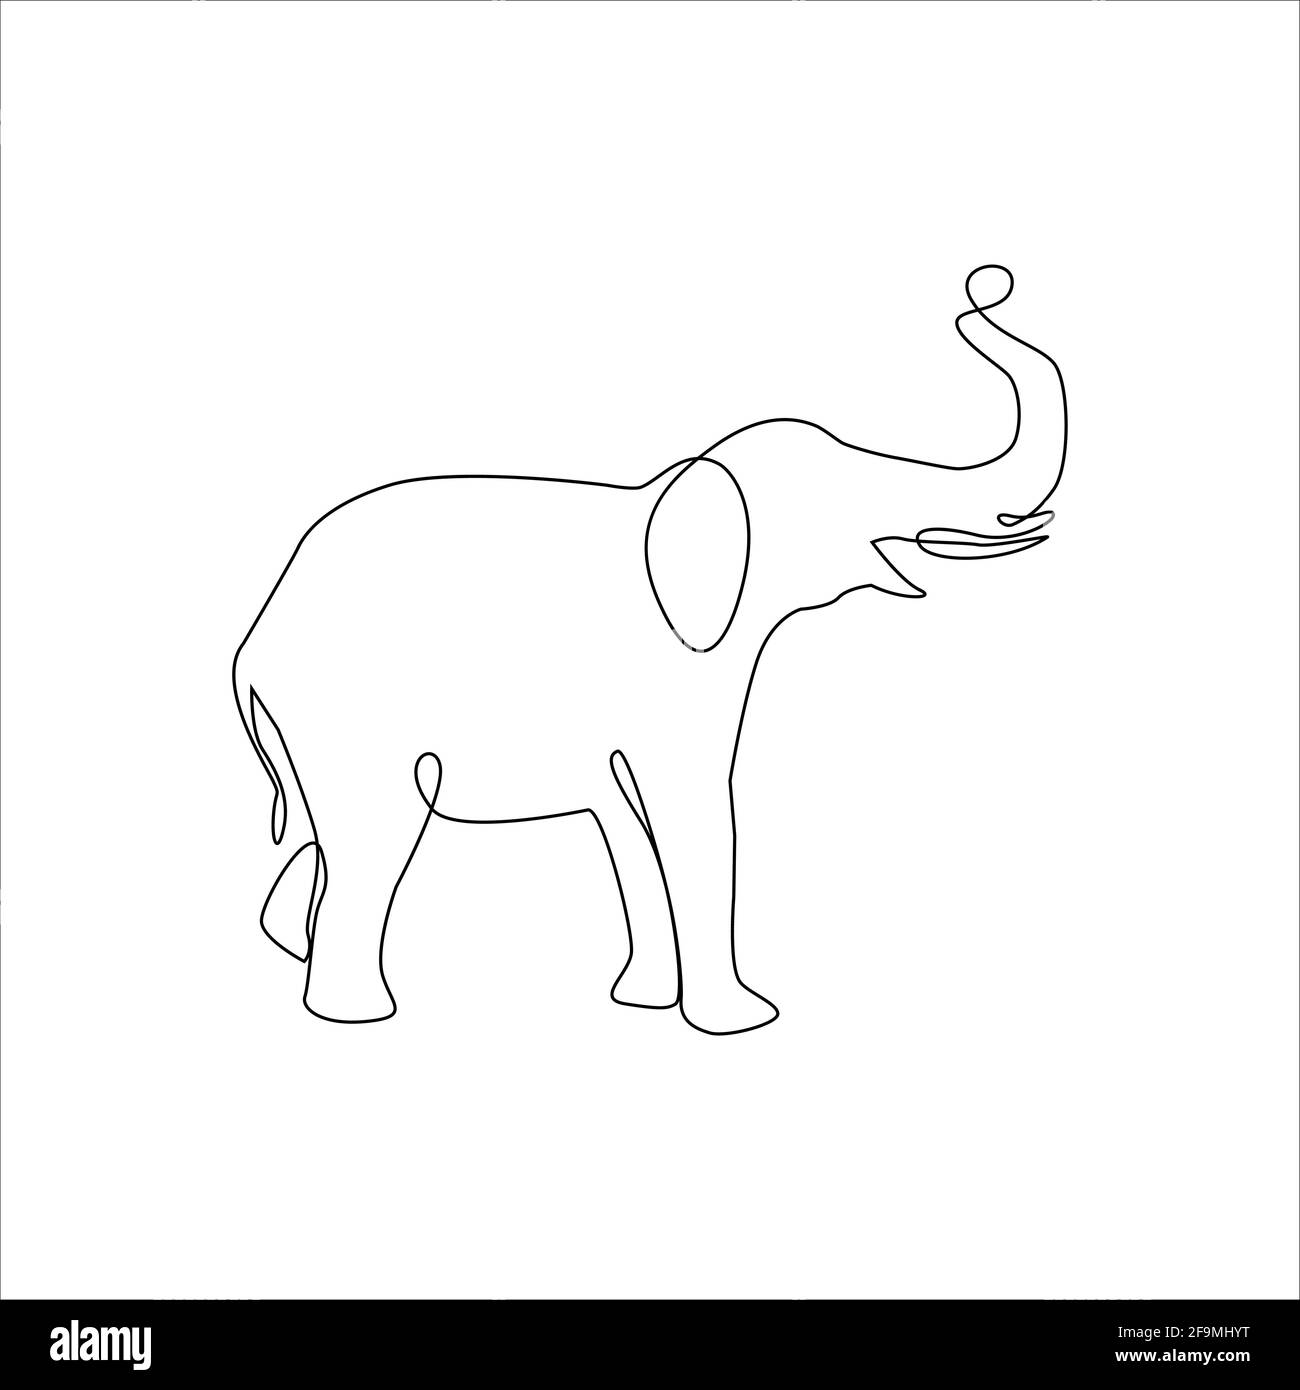 Dibujo linea continua elefante fotografías e imágenes de alta resolución -  Alamy